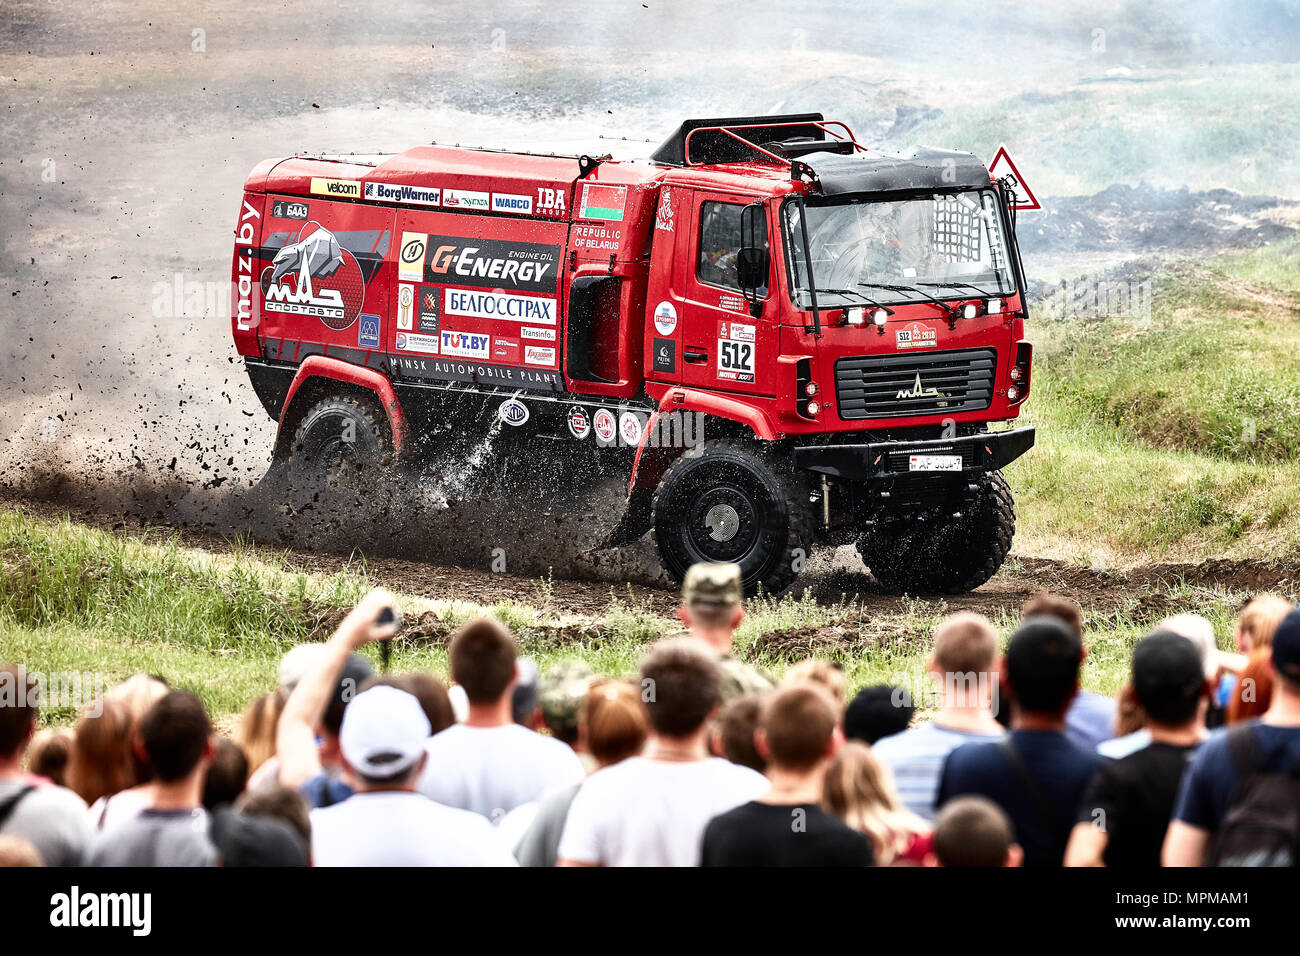 Truck MAZ of the MAZ-Sportauto racing team 20.05.2018, Rostov Region, Russia Stock Photo